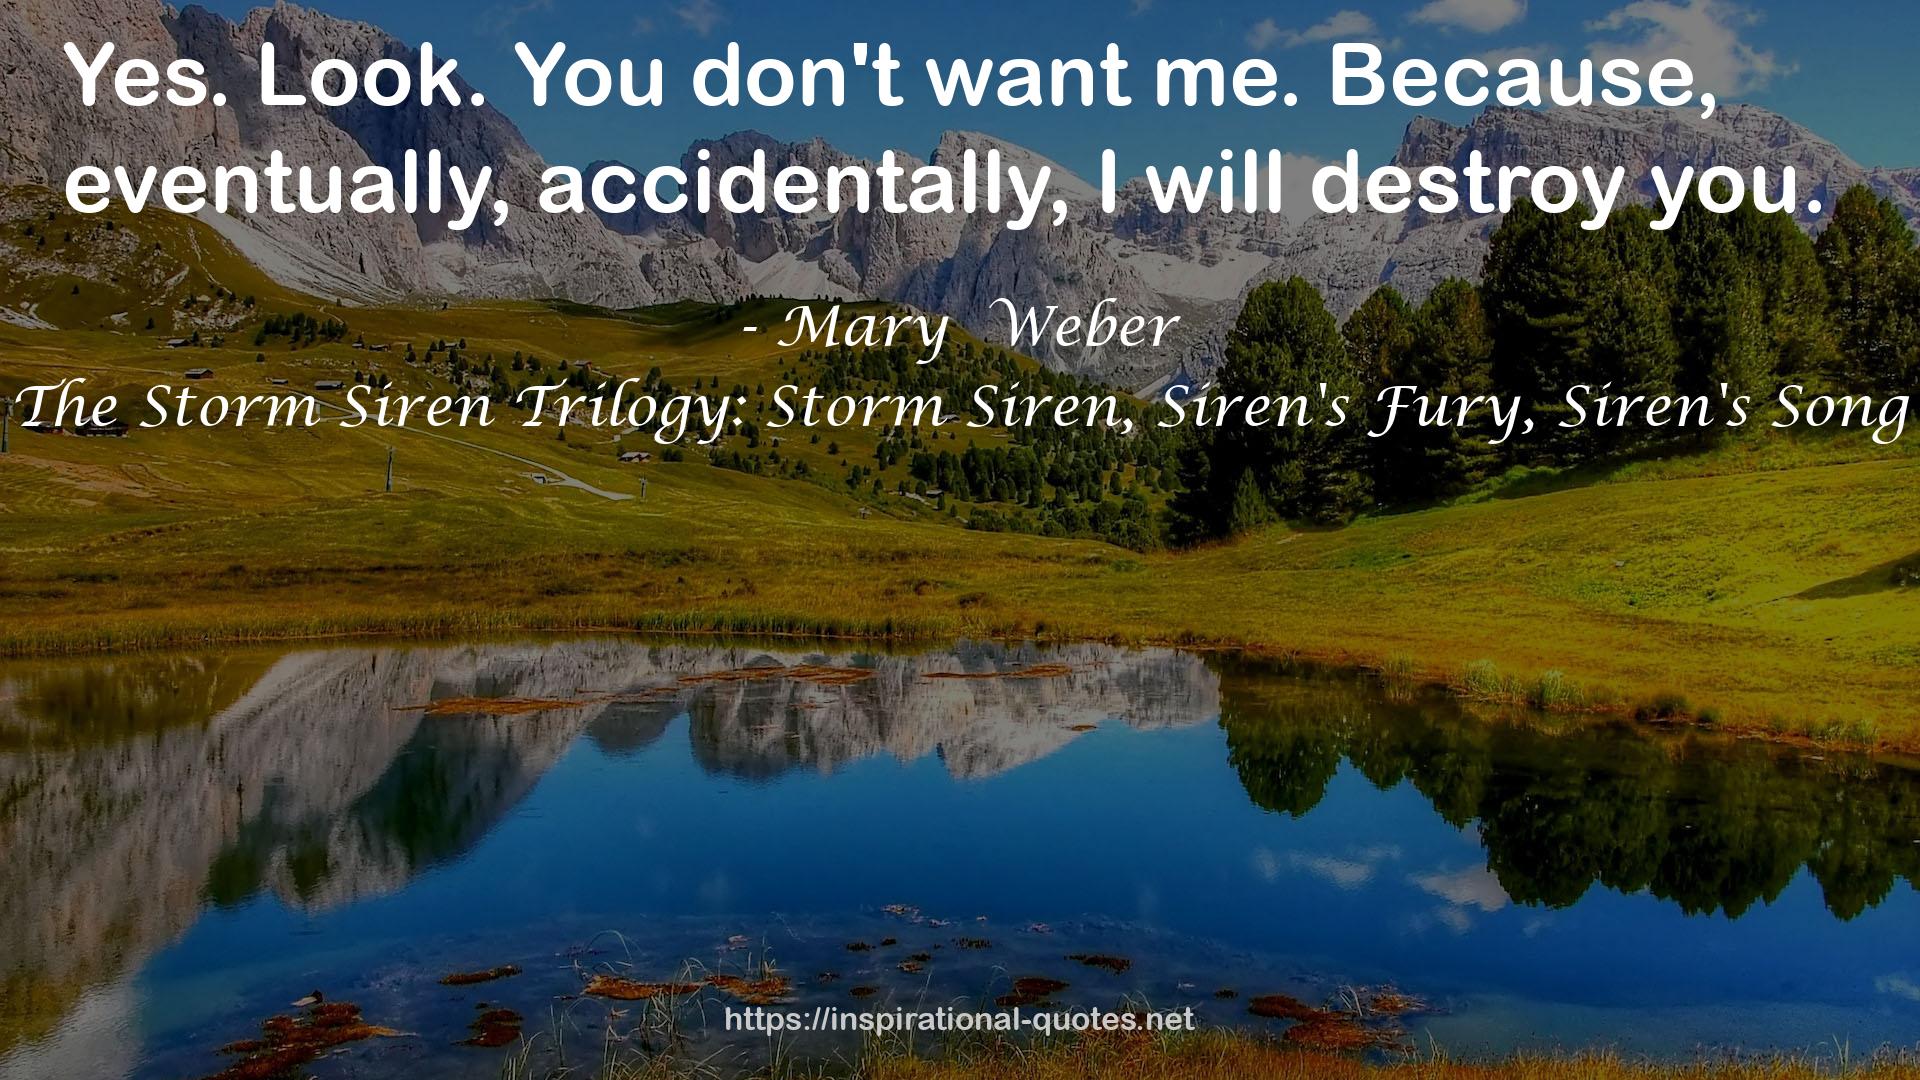 The Storm Siren Trilogy: Storm Siren, Siren's Fury, Siren's Song QUOTES